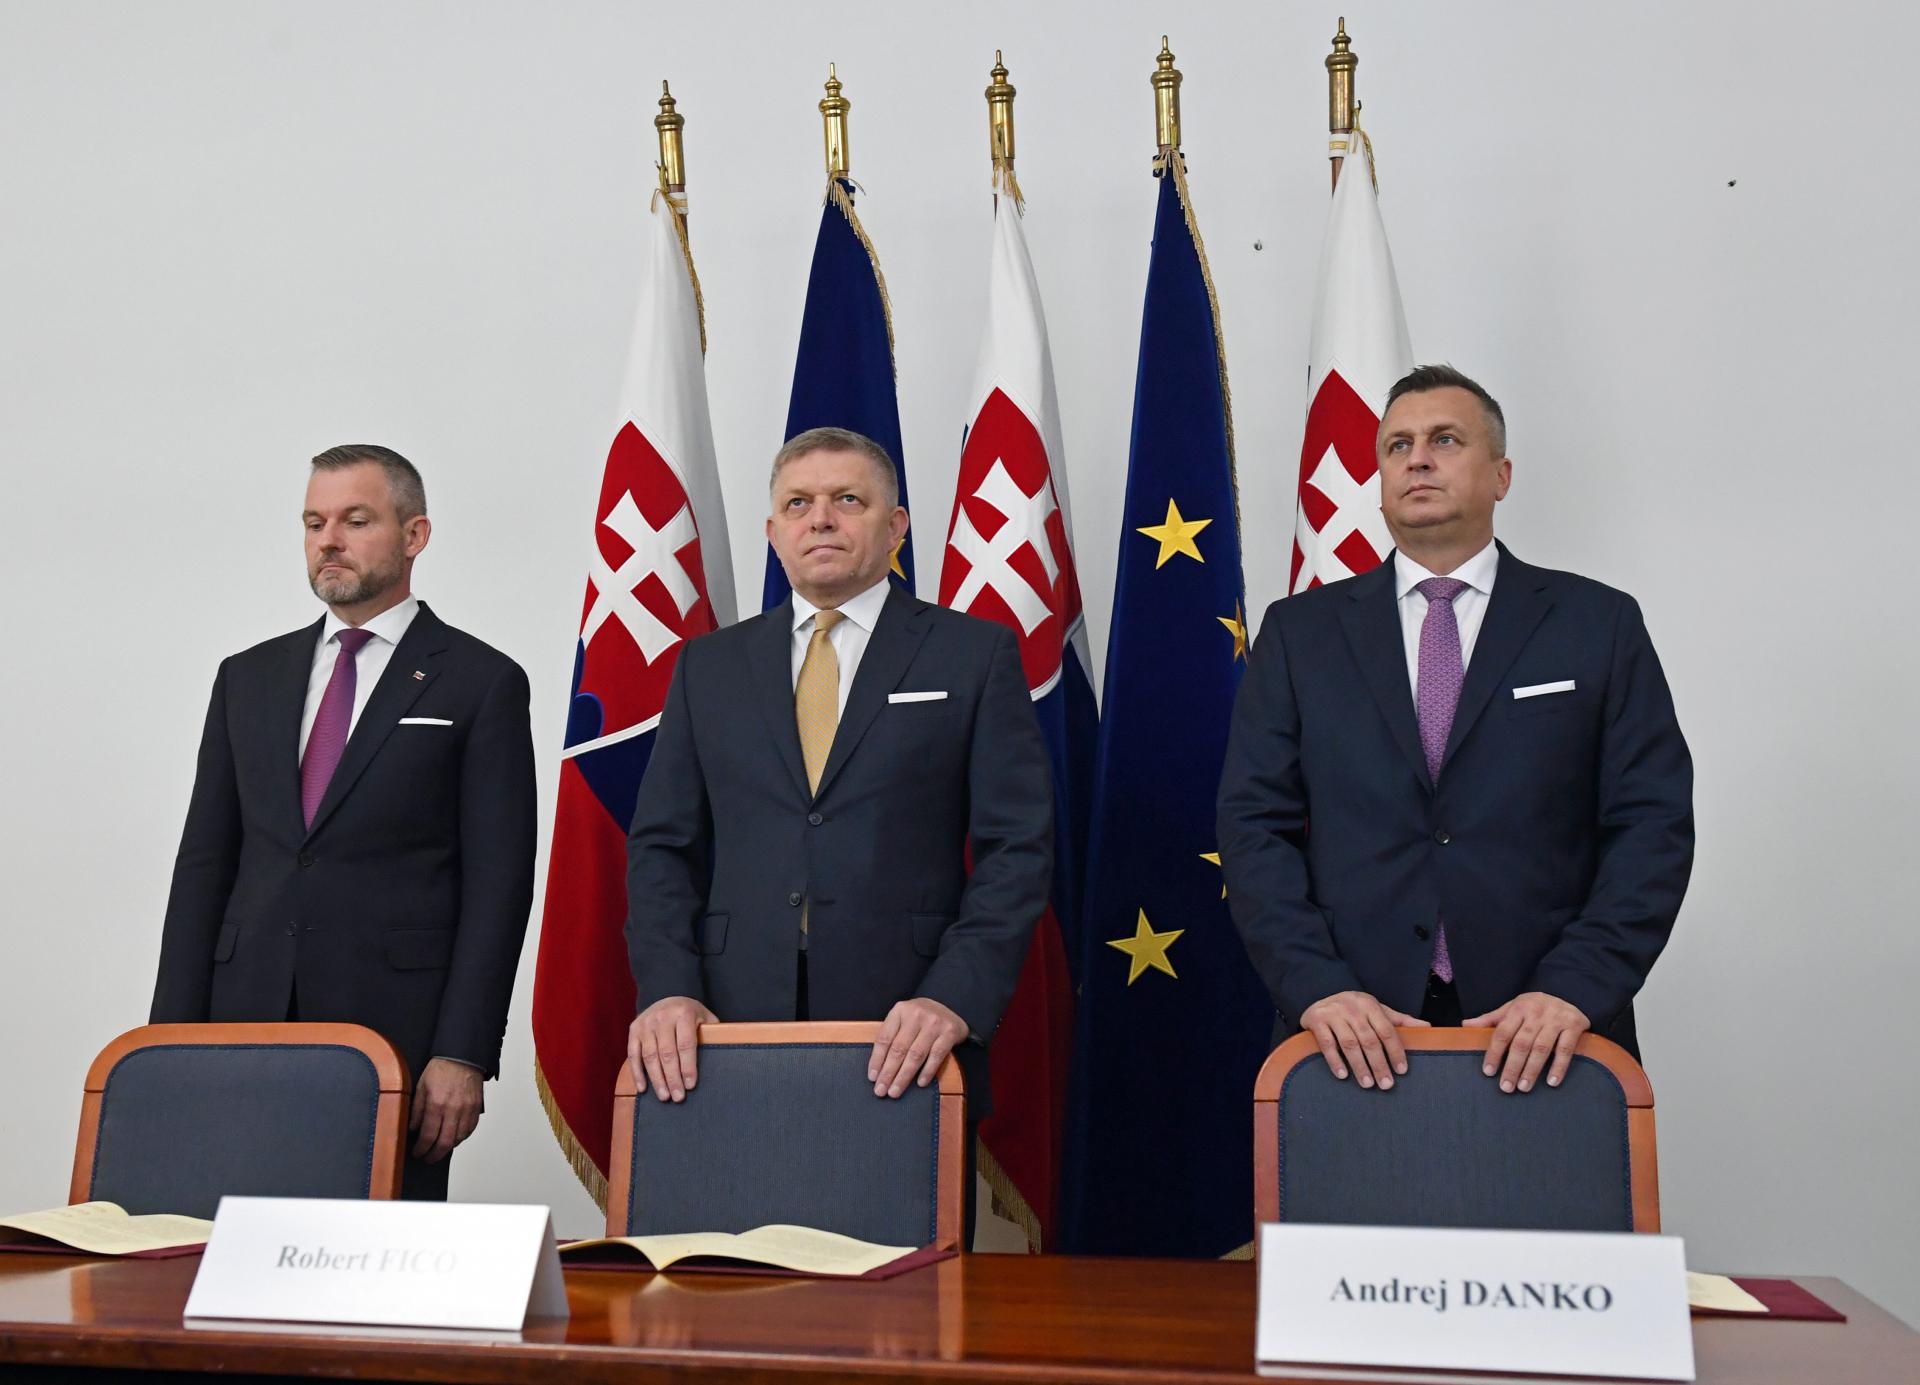 Fico, Pellegrini a Danko podpísali koaličnú dohodu. Šéf Smeru prezradil, ako si rozdelia ministerstvá